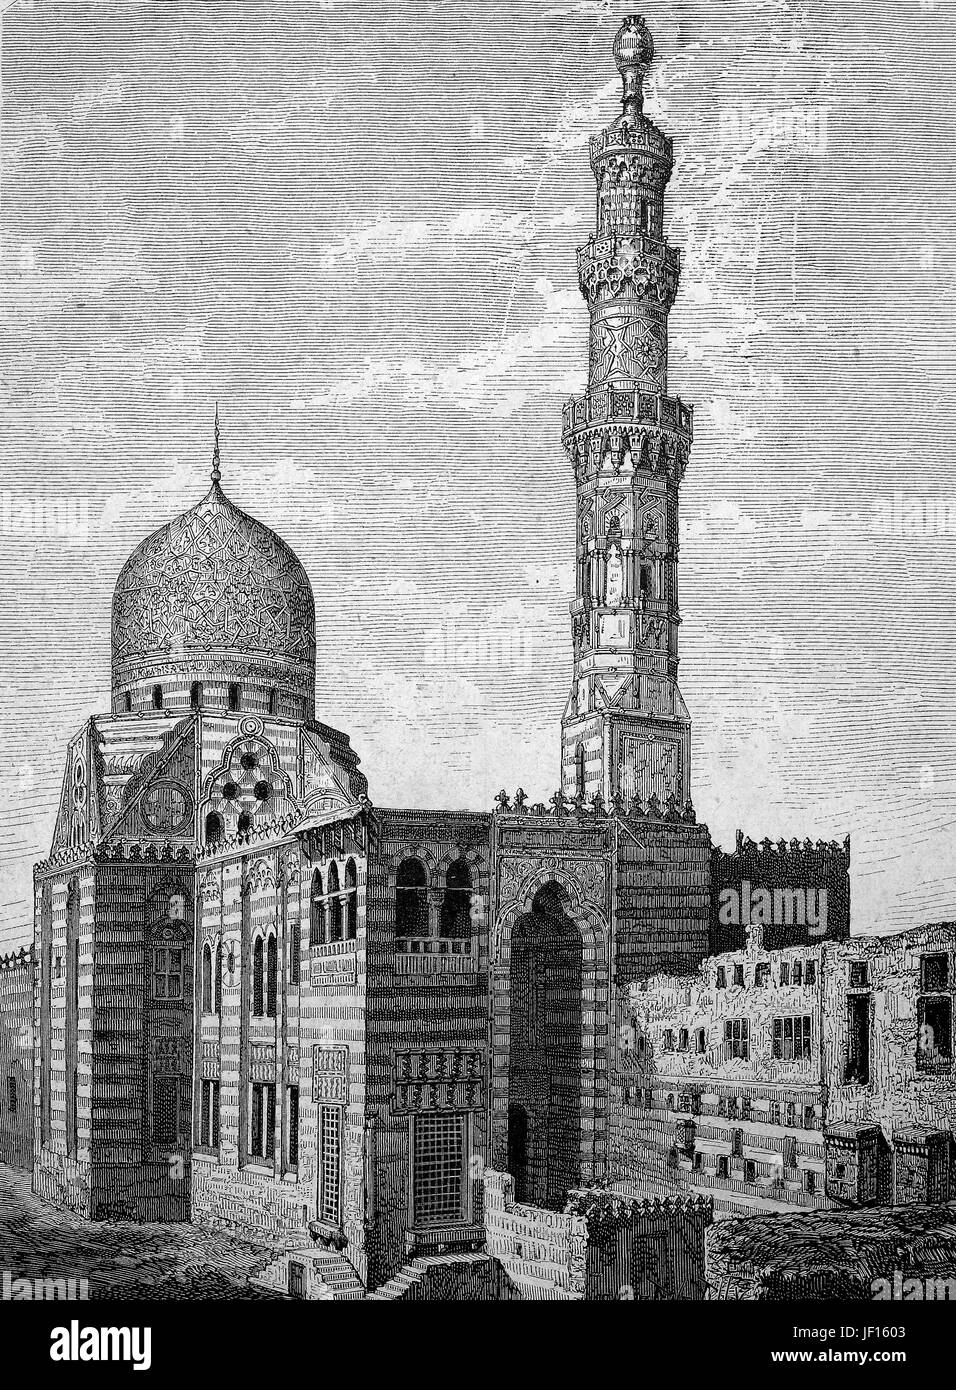 Historische Abbildung der Moschee in Kairo, Ägypten, Digital verbesserte Reproduktion von einem ursprünglichen Drucken von 1888 Stockfoto